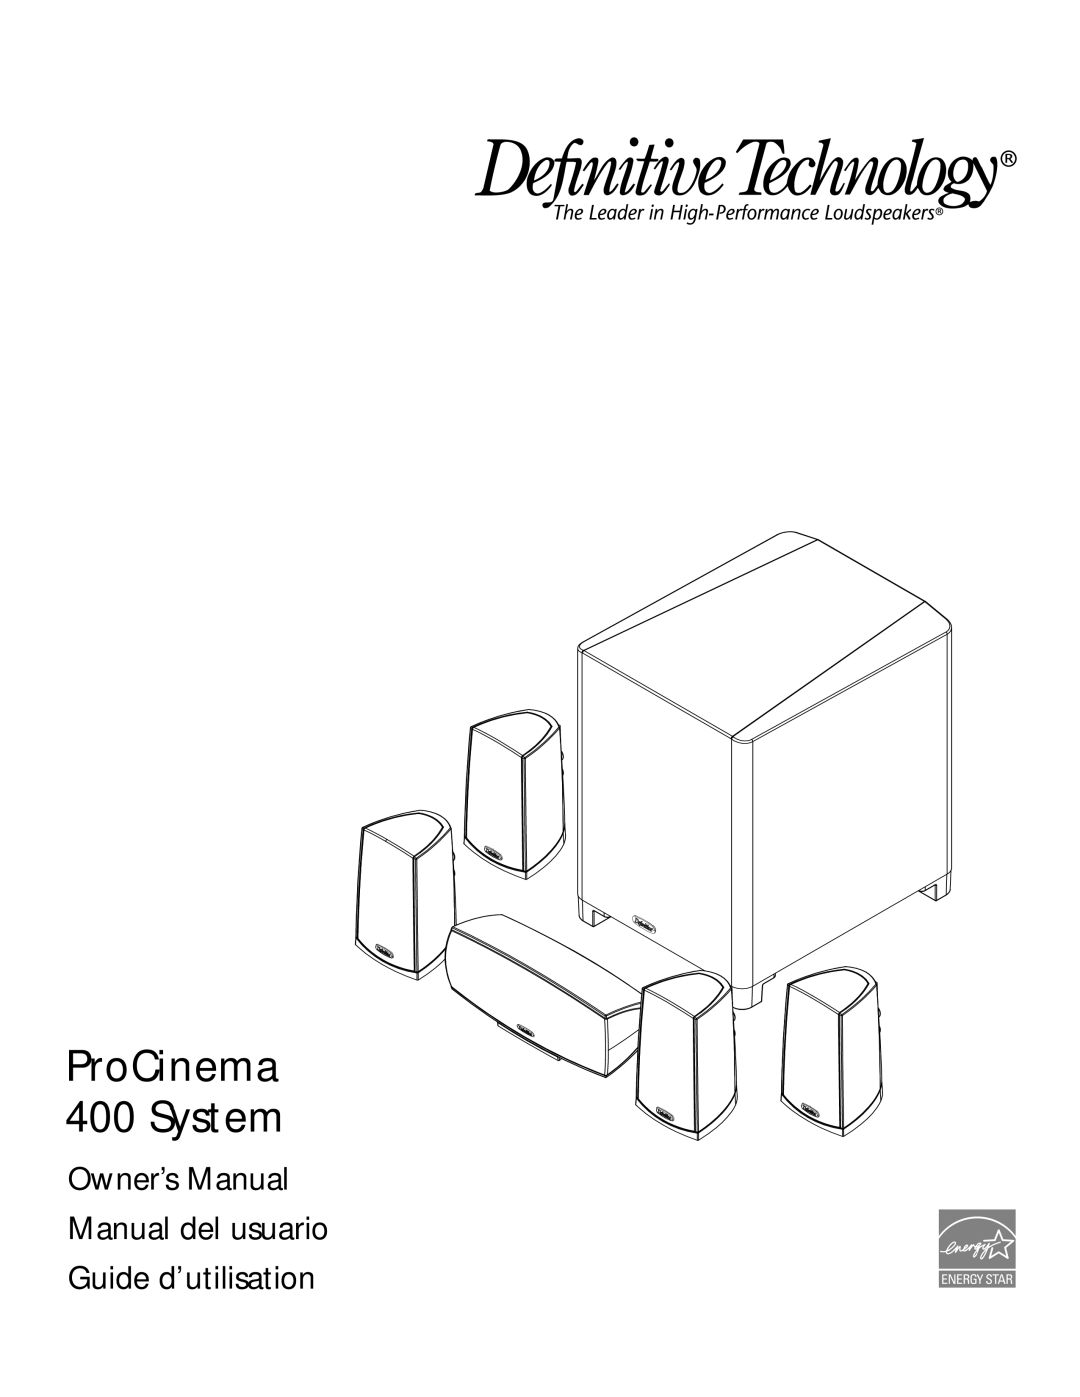 Definitive Technology owner manual ProCinema 400 System, Guide d’utilisation 